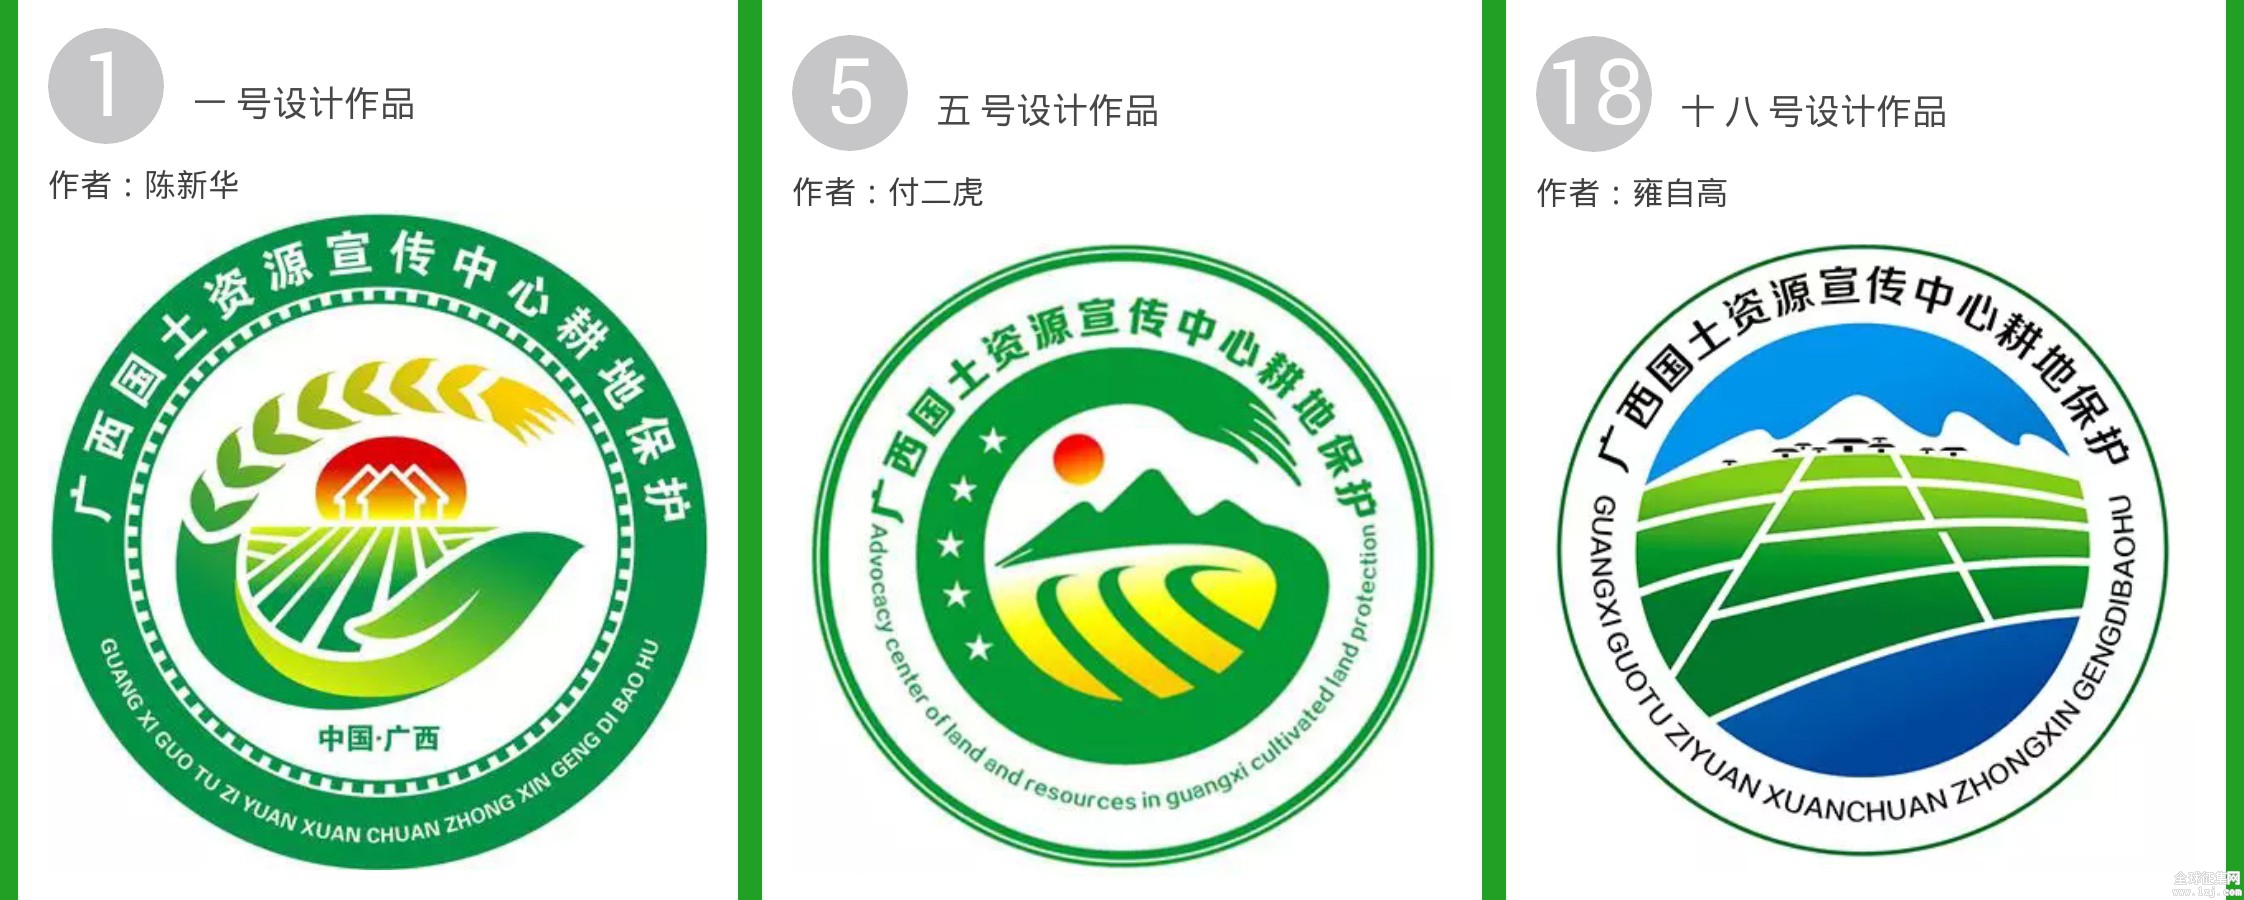 广西国土资源耕地保护宣传形象logo征集大奖出炉